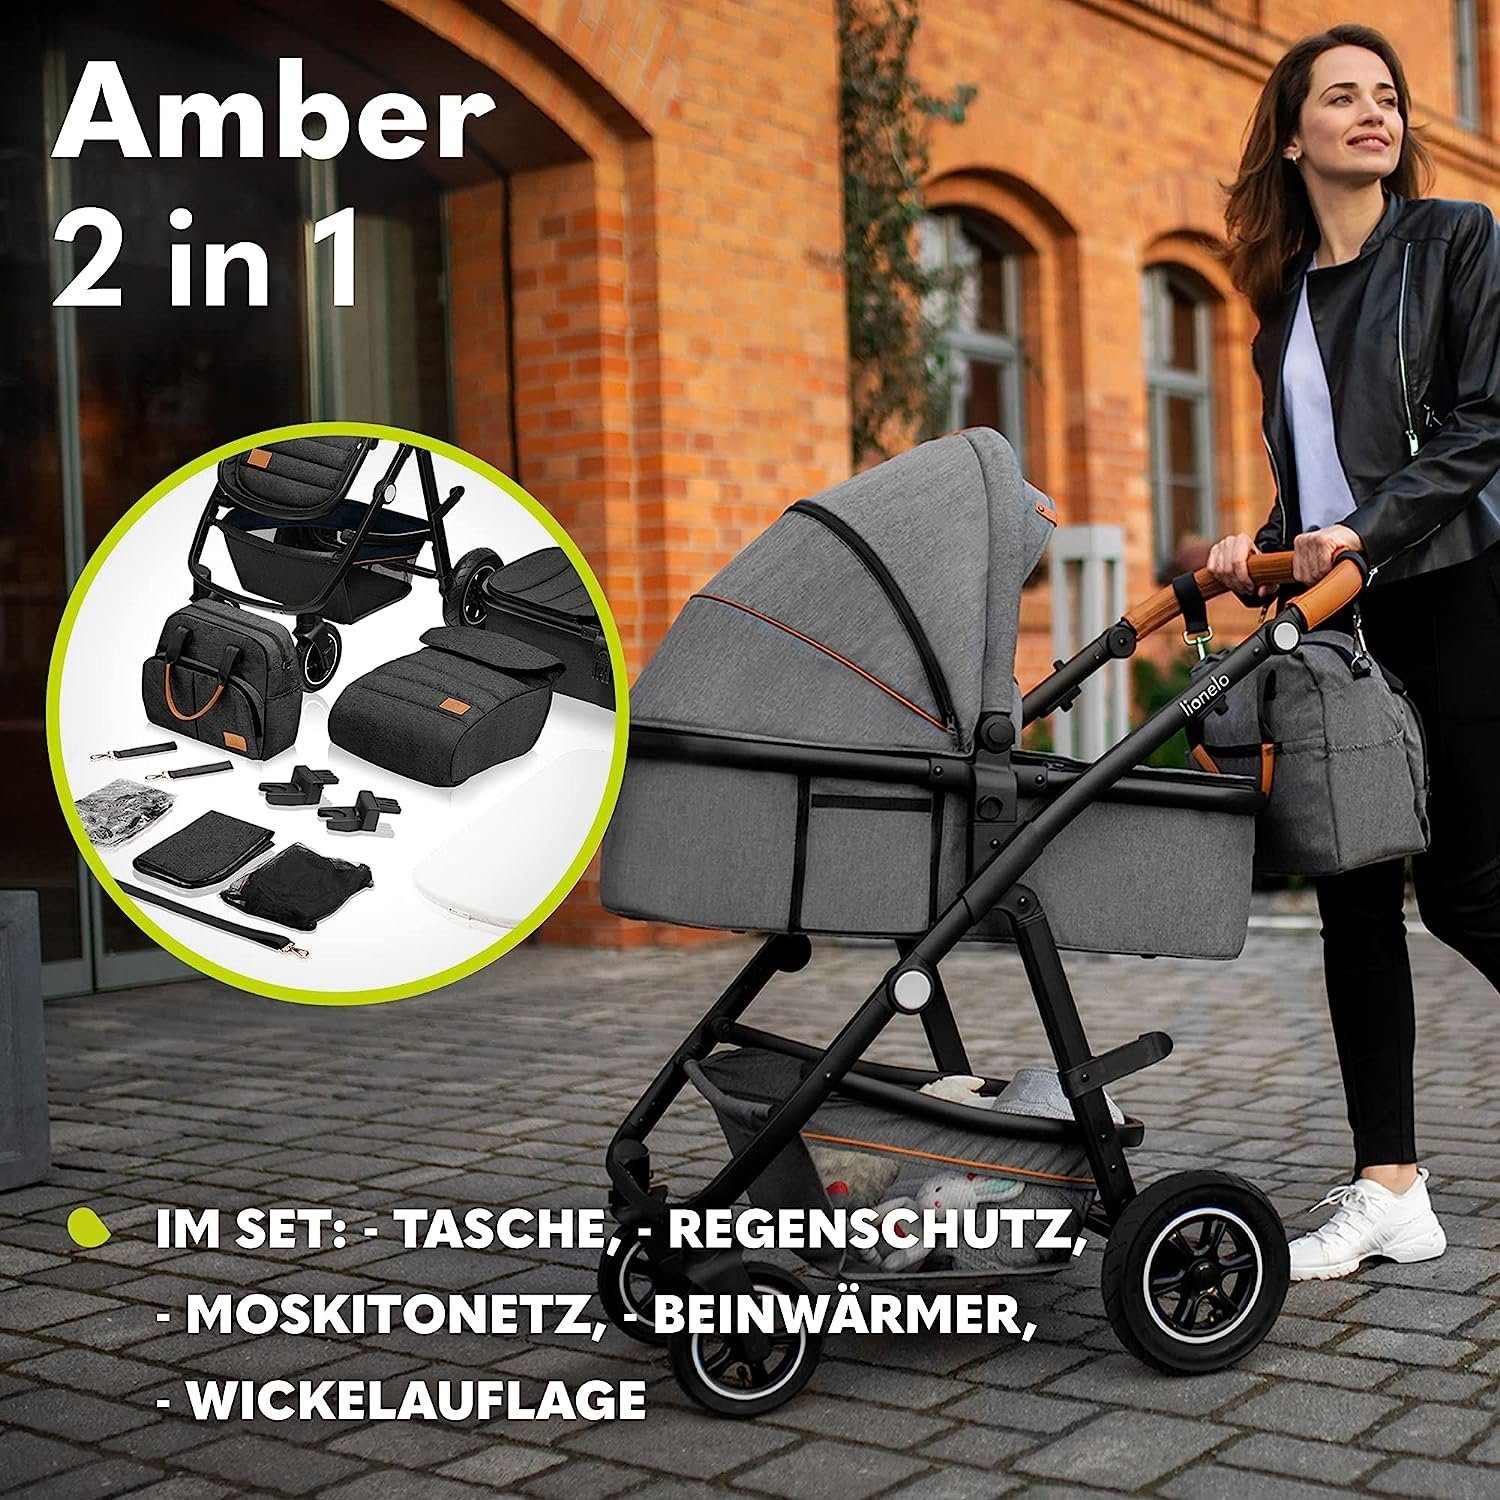 Regenschutz lionelo Grau 2in1 Amber, Schutzüberzug Moskitonetz Kombi-Kinderwagen Tasche